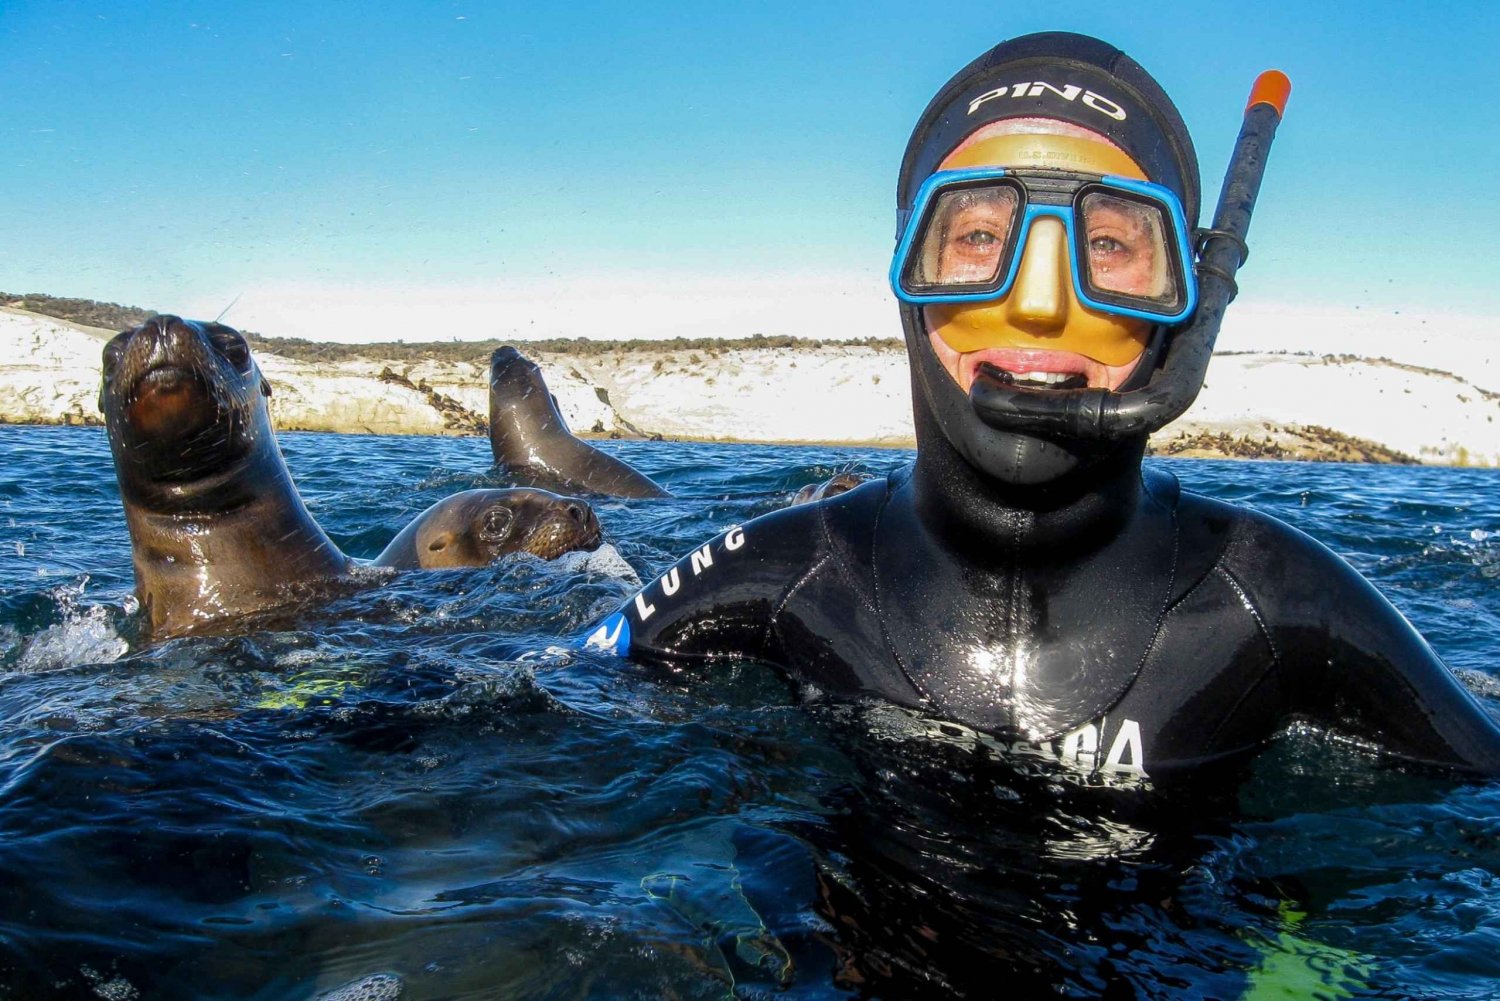 Puerto Madryn: Snorkel con leones marinos